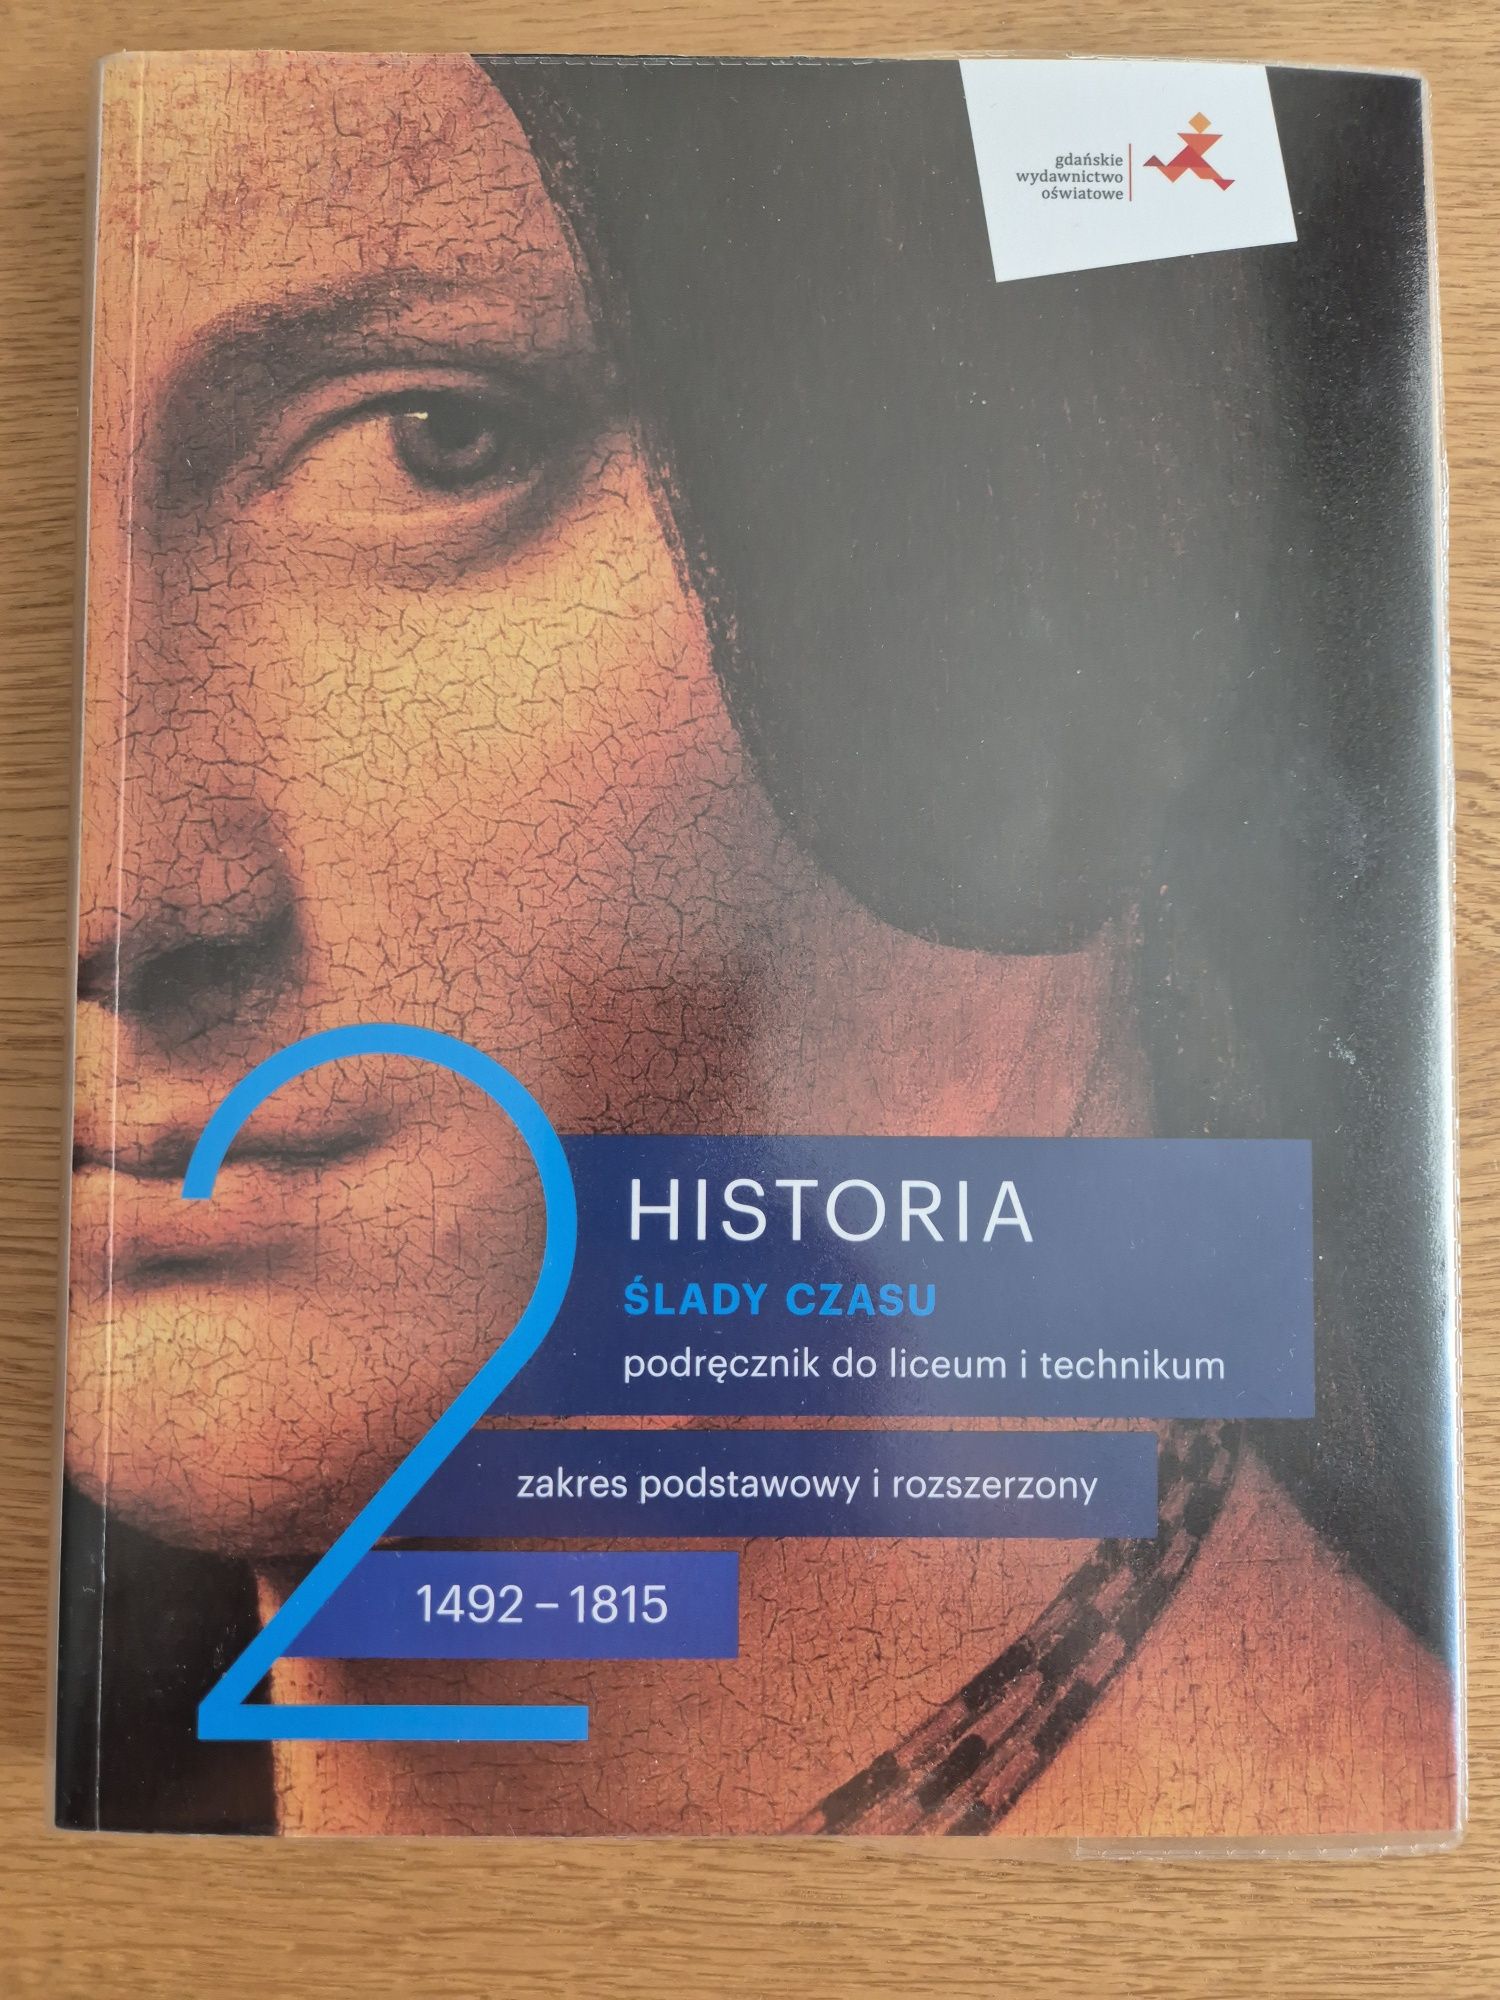 Podręcznik "Historia 2. Ślady czasu"